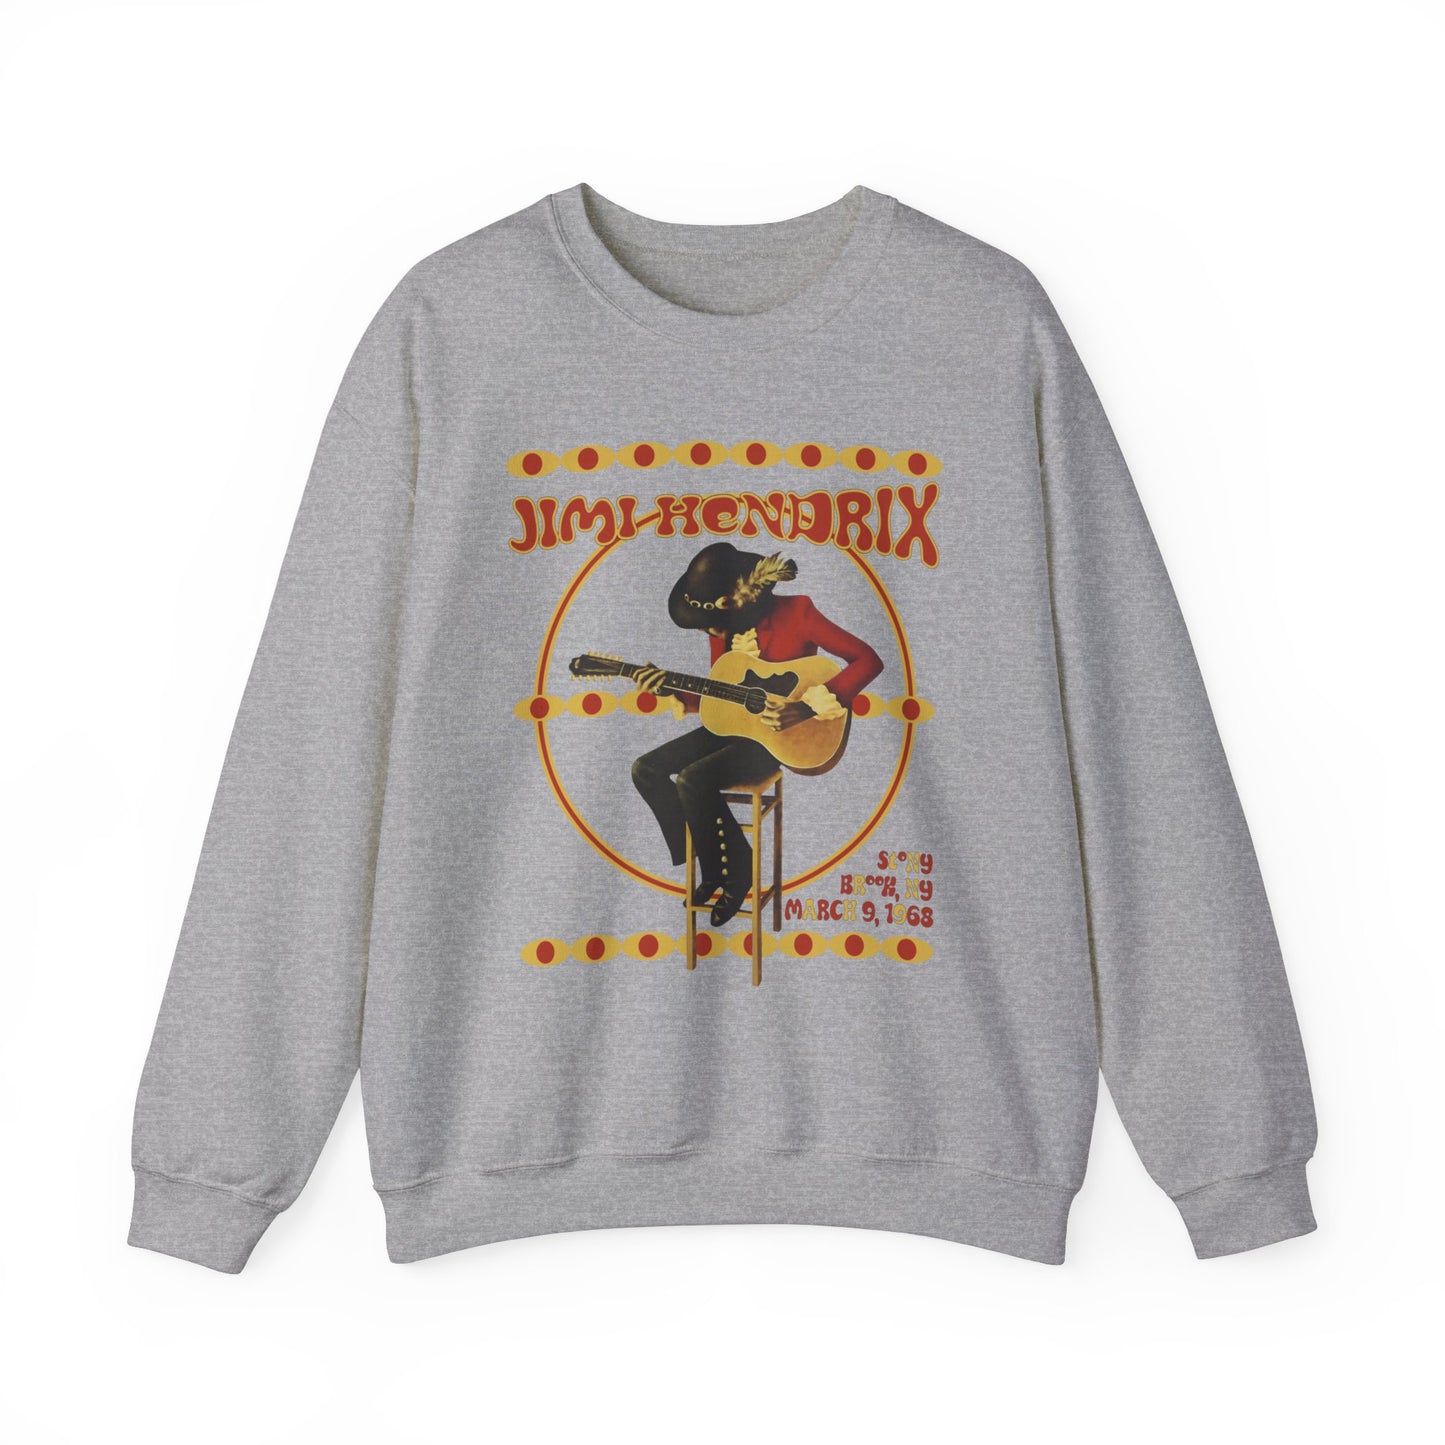 Jimi Hendrix - Unisex Sweatshirt